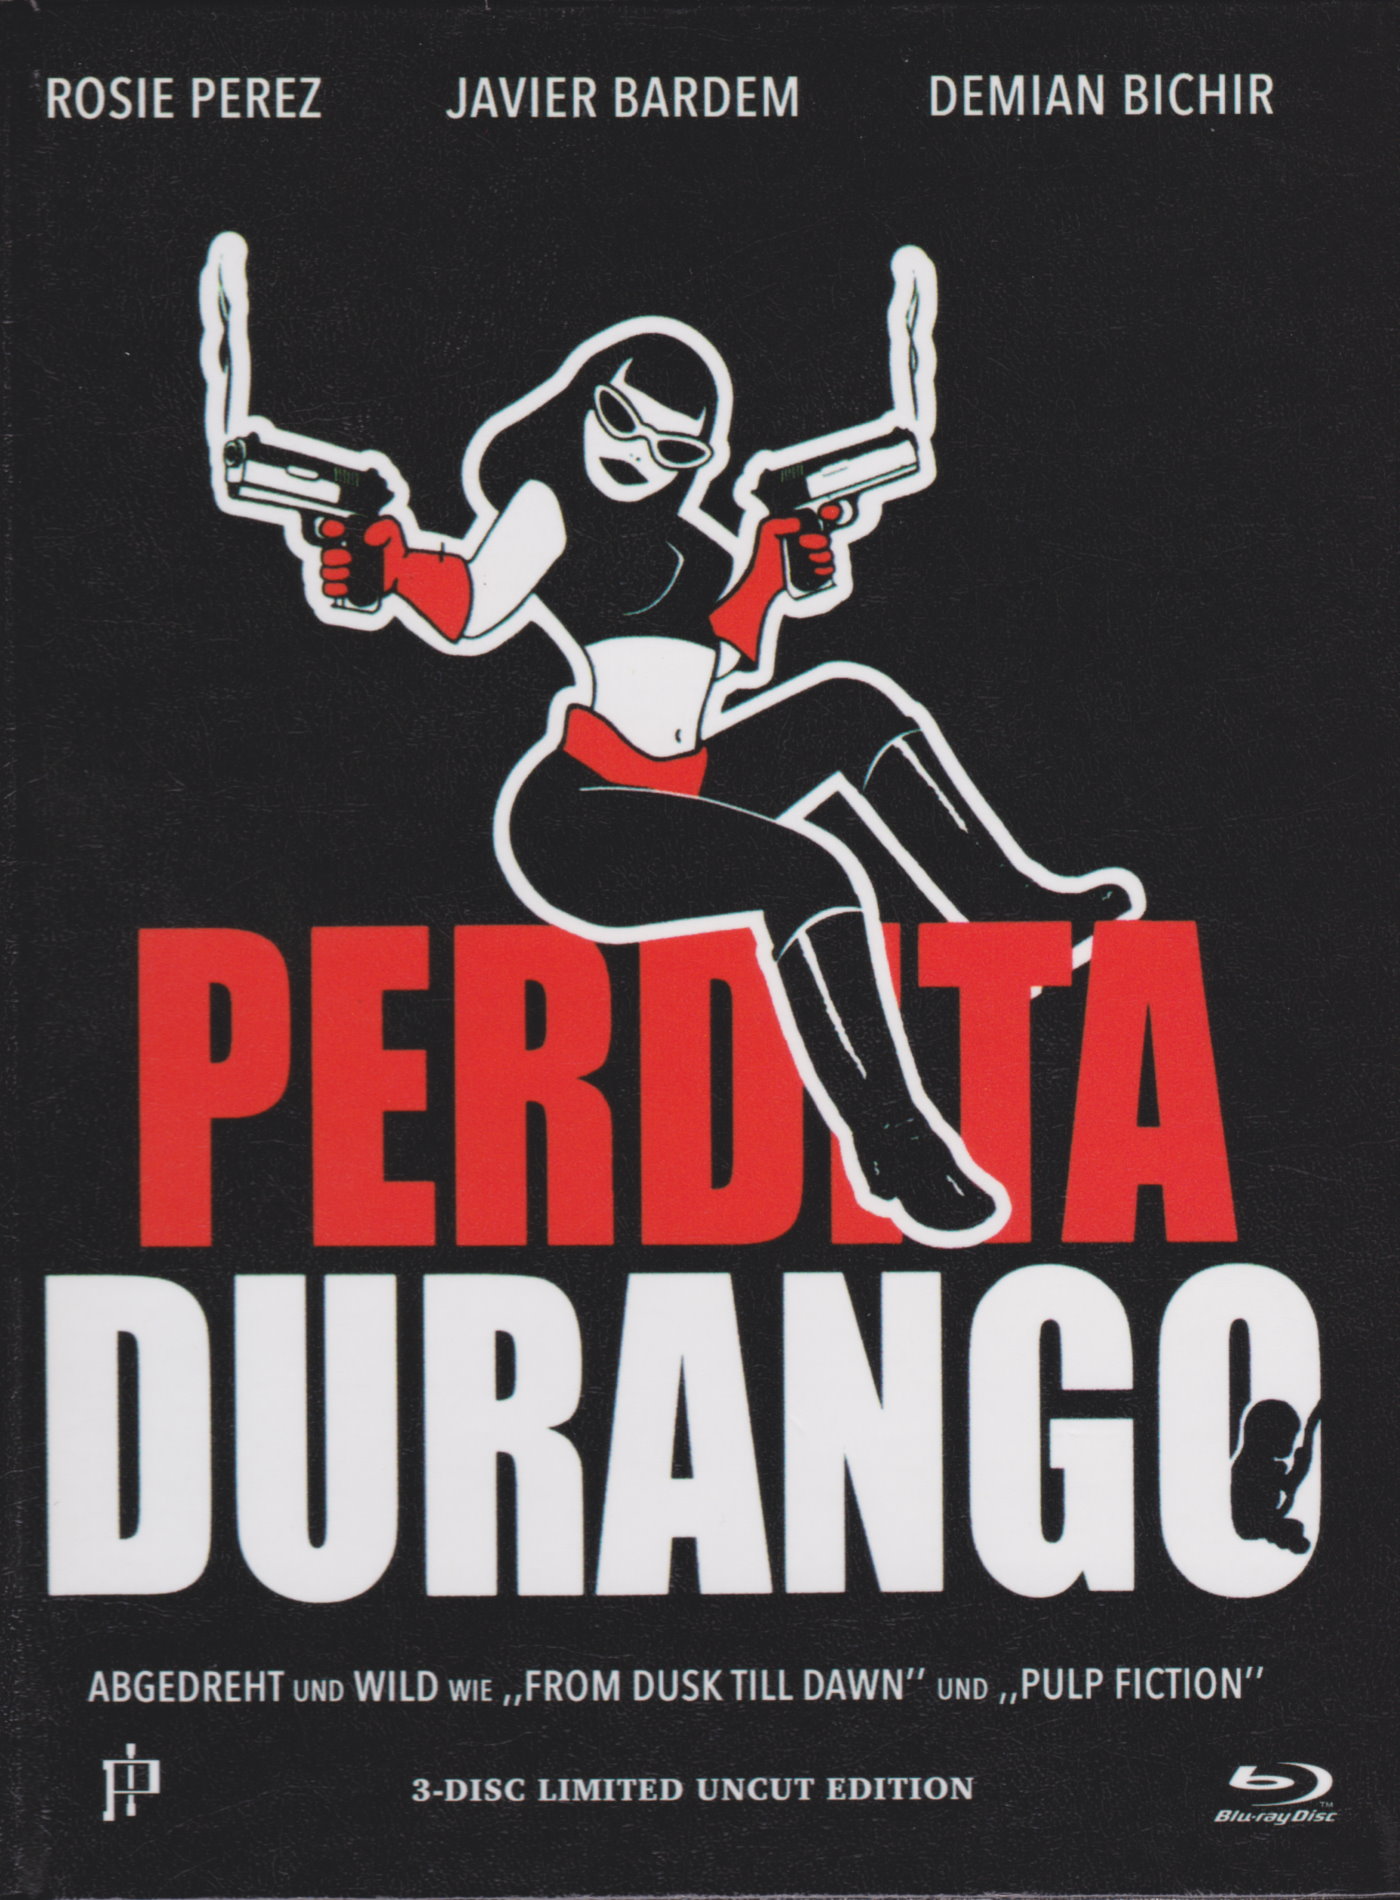 Cover - Perdita Durango.jpg